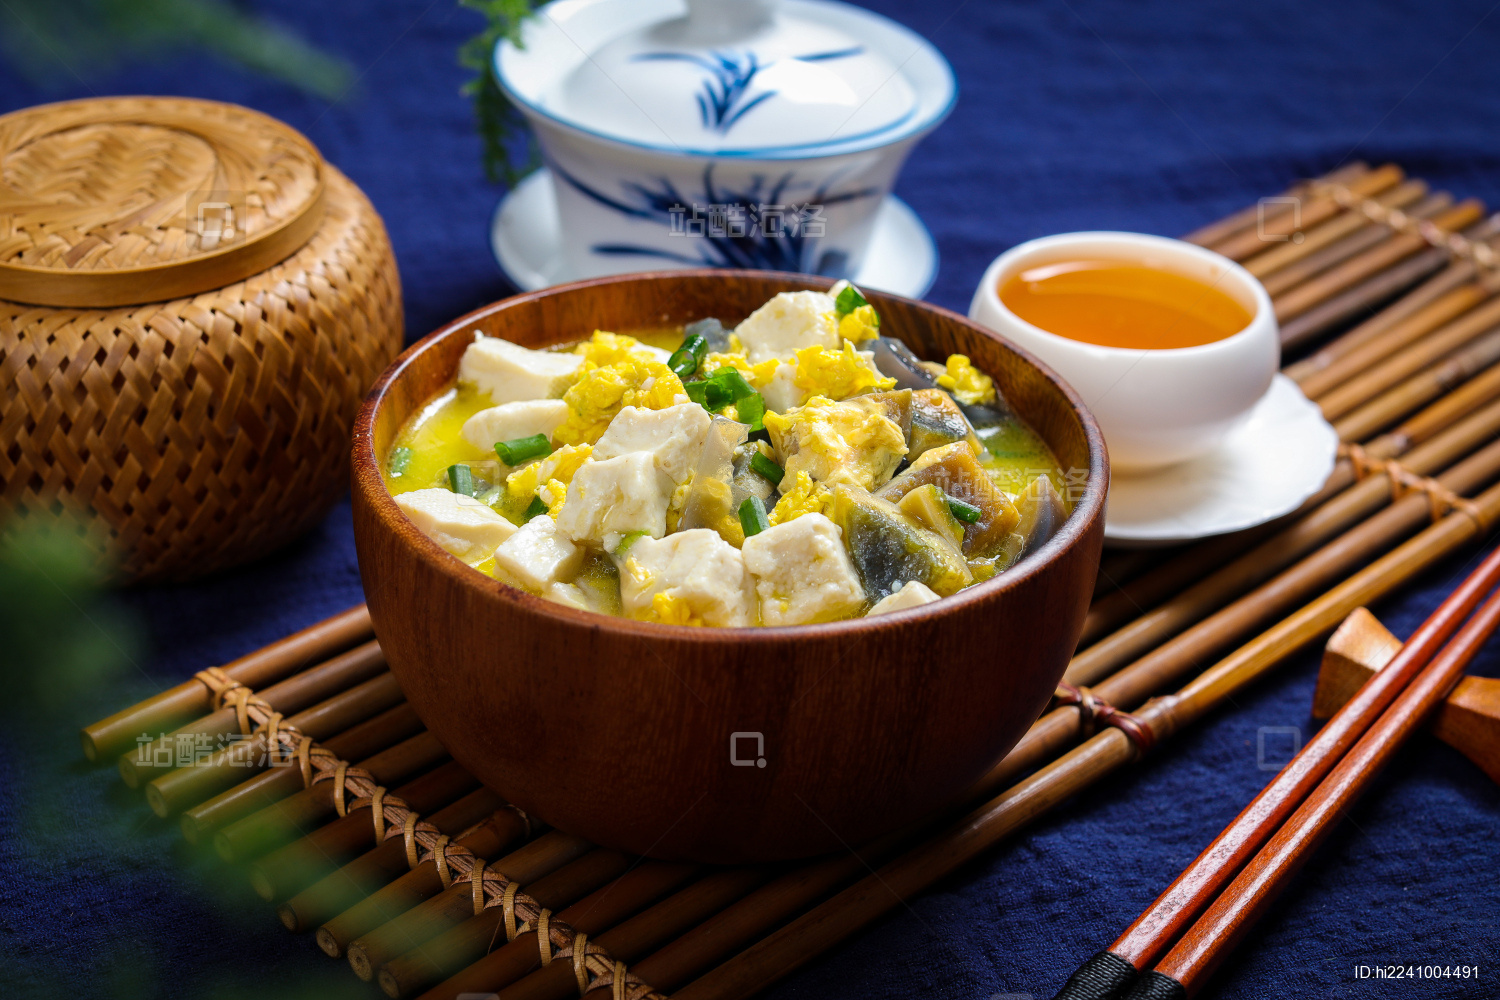 皮蛋豆腐汤,皮蛋豆腐汤的家常做法 - 美食杰皮蛋豆腐汤做法大全